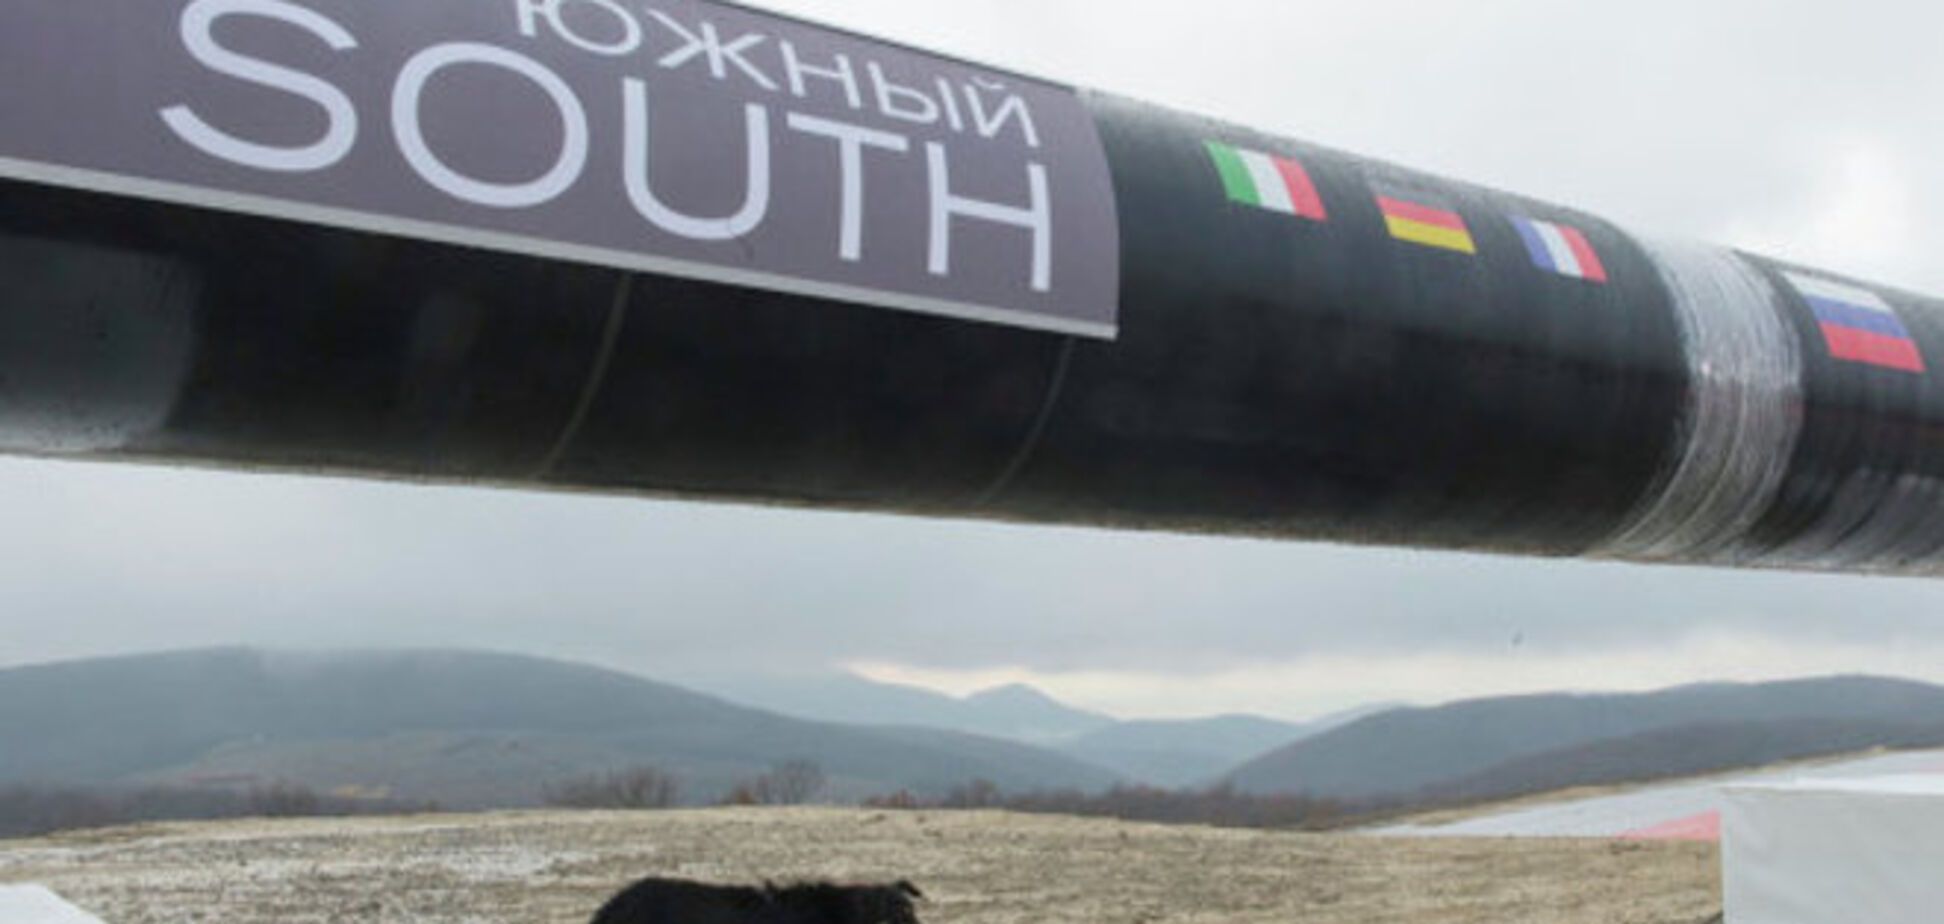 Еврокомиссар: судьба 'Южного потока' зависит от позиции РФ по Украине